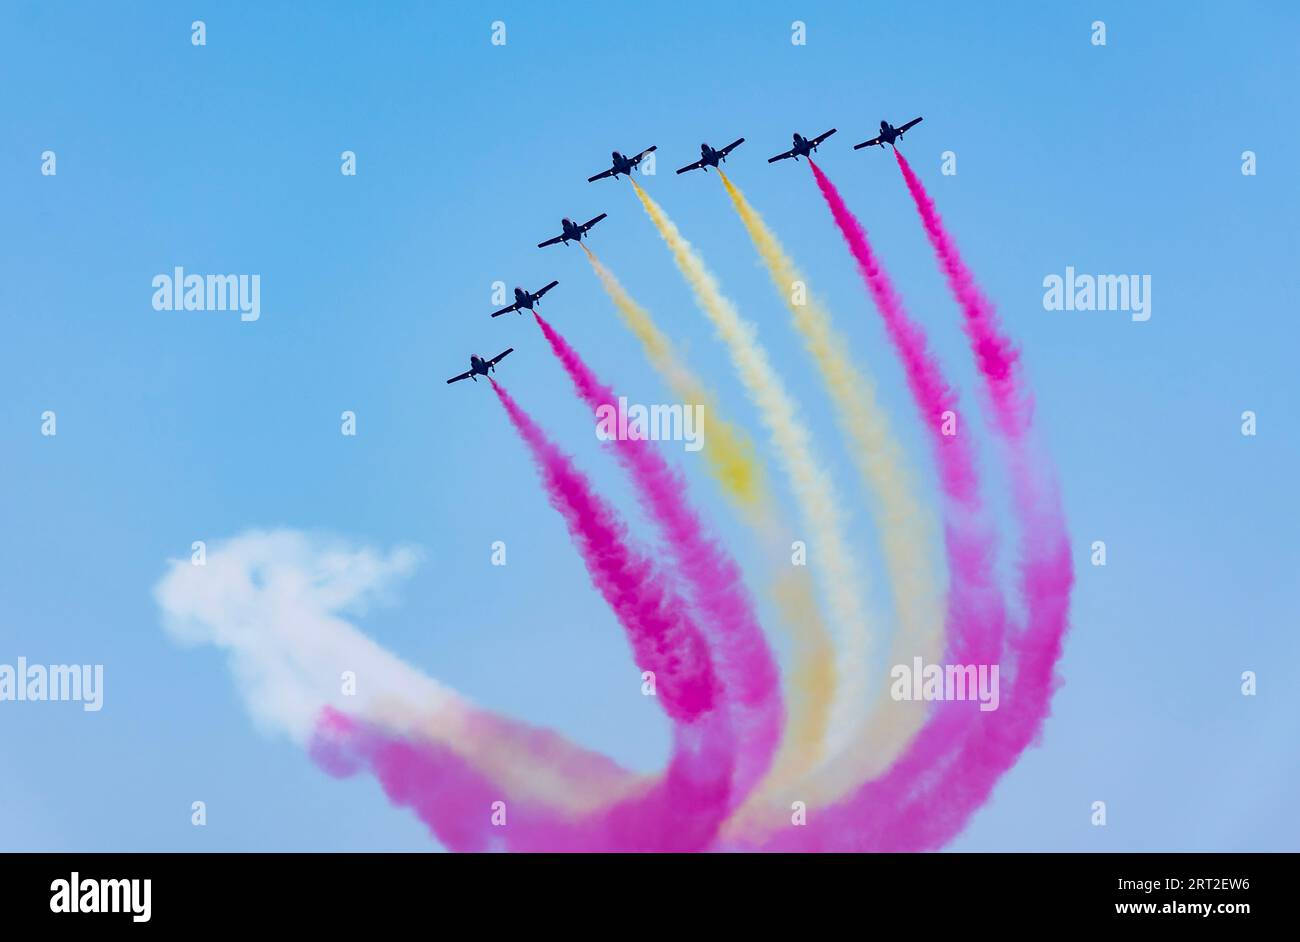 La Patrulla Aguila de l'armée de l'air espagnole faisant une pirouette aux couleurs du drapeau espagnol. Banque D'Images